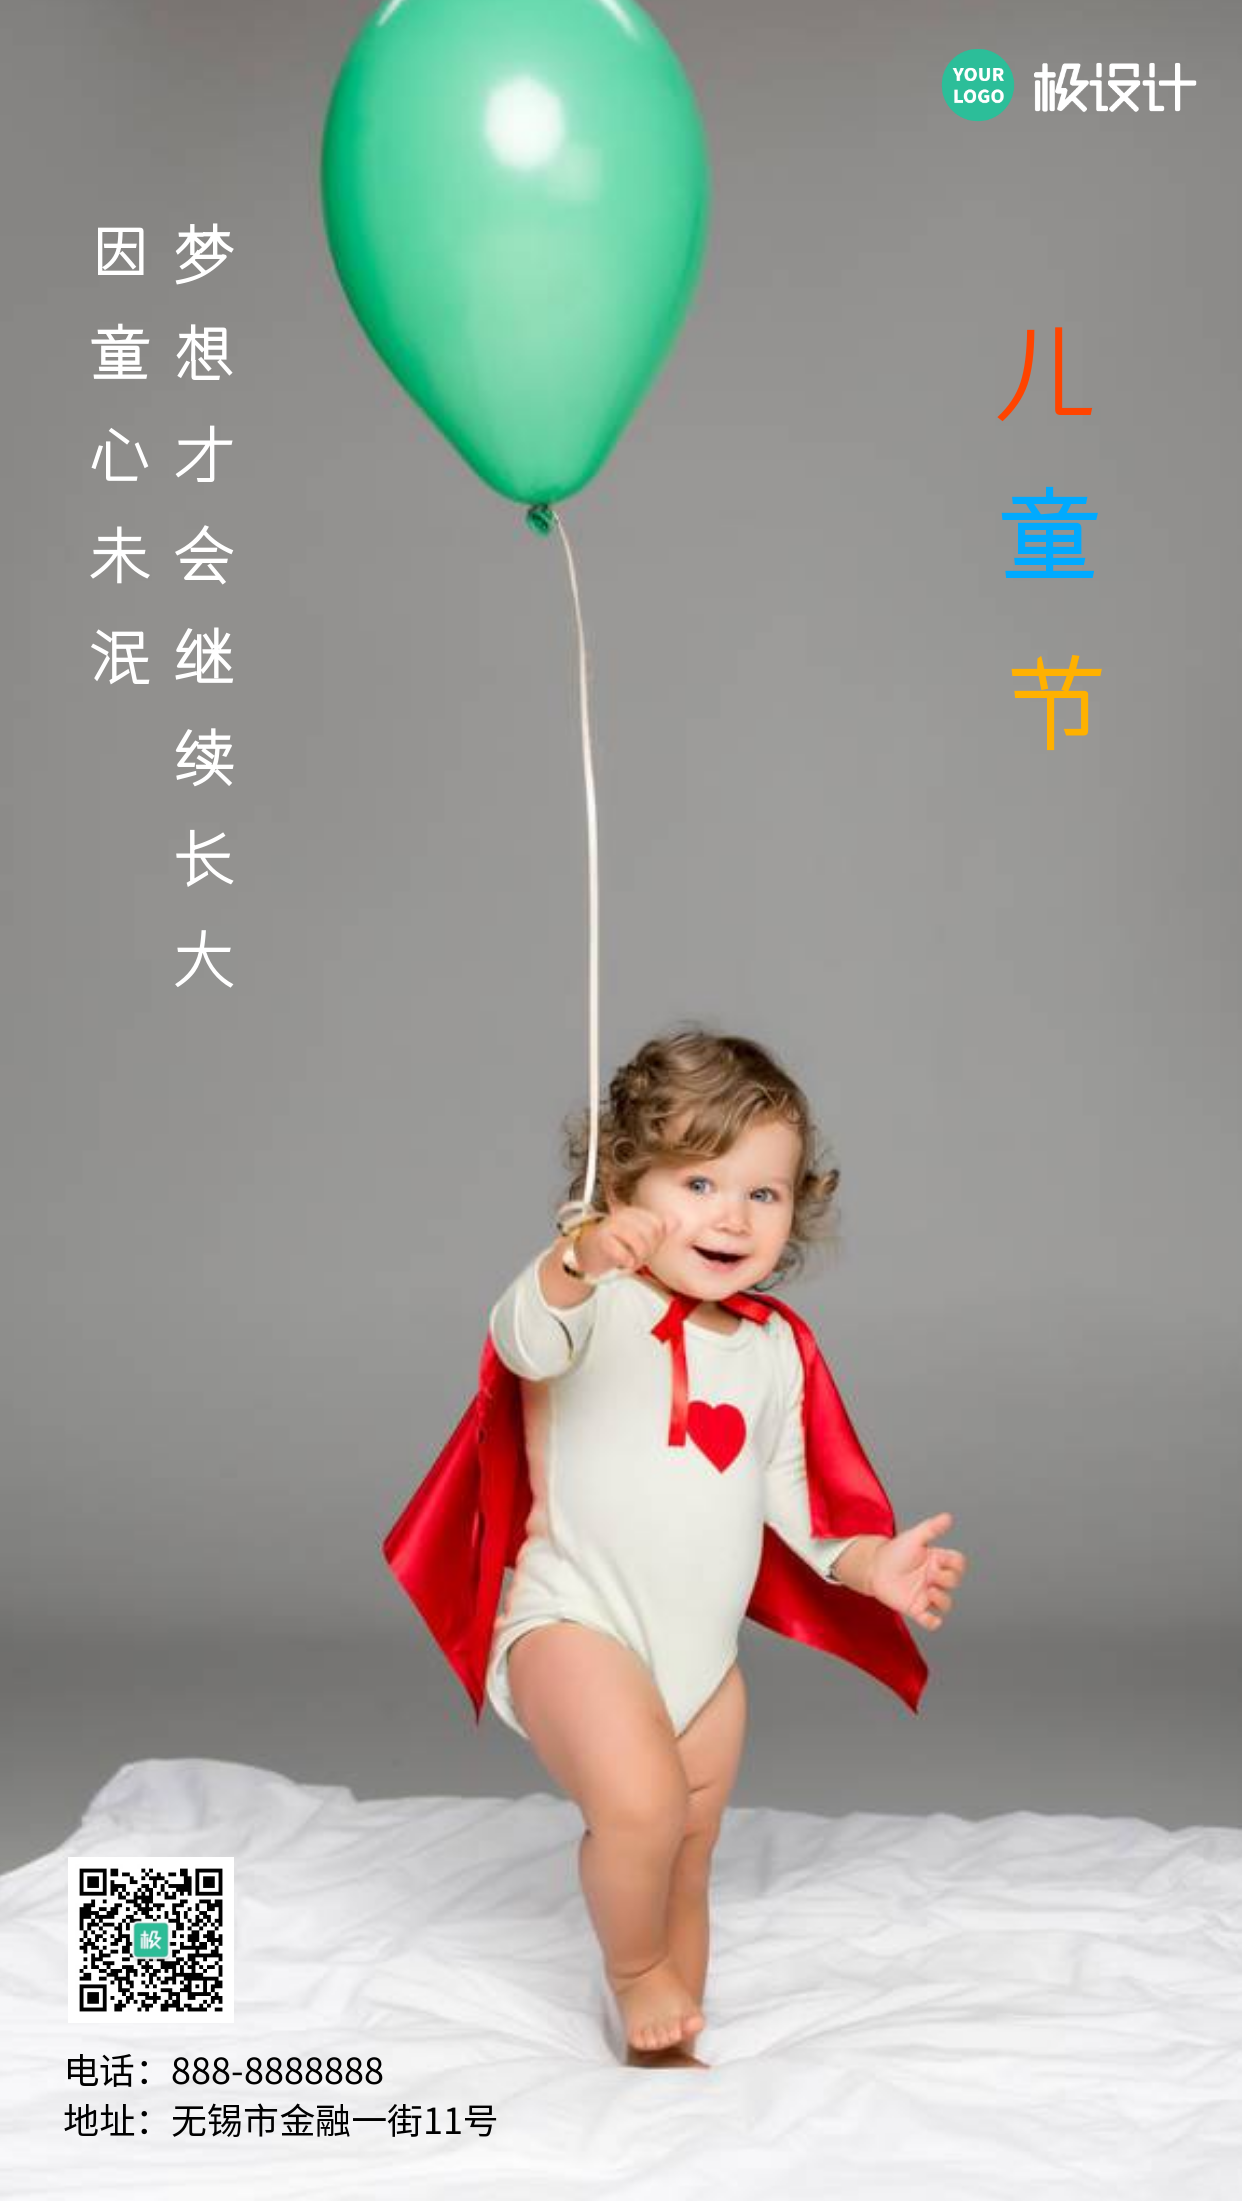 儿童节开心玩气球手机营销海报